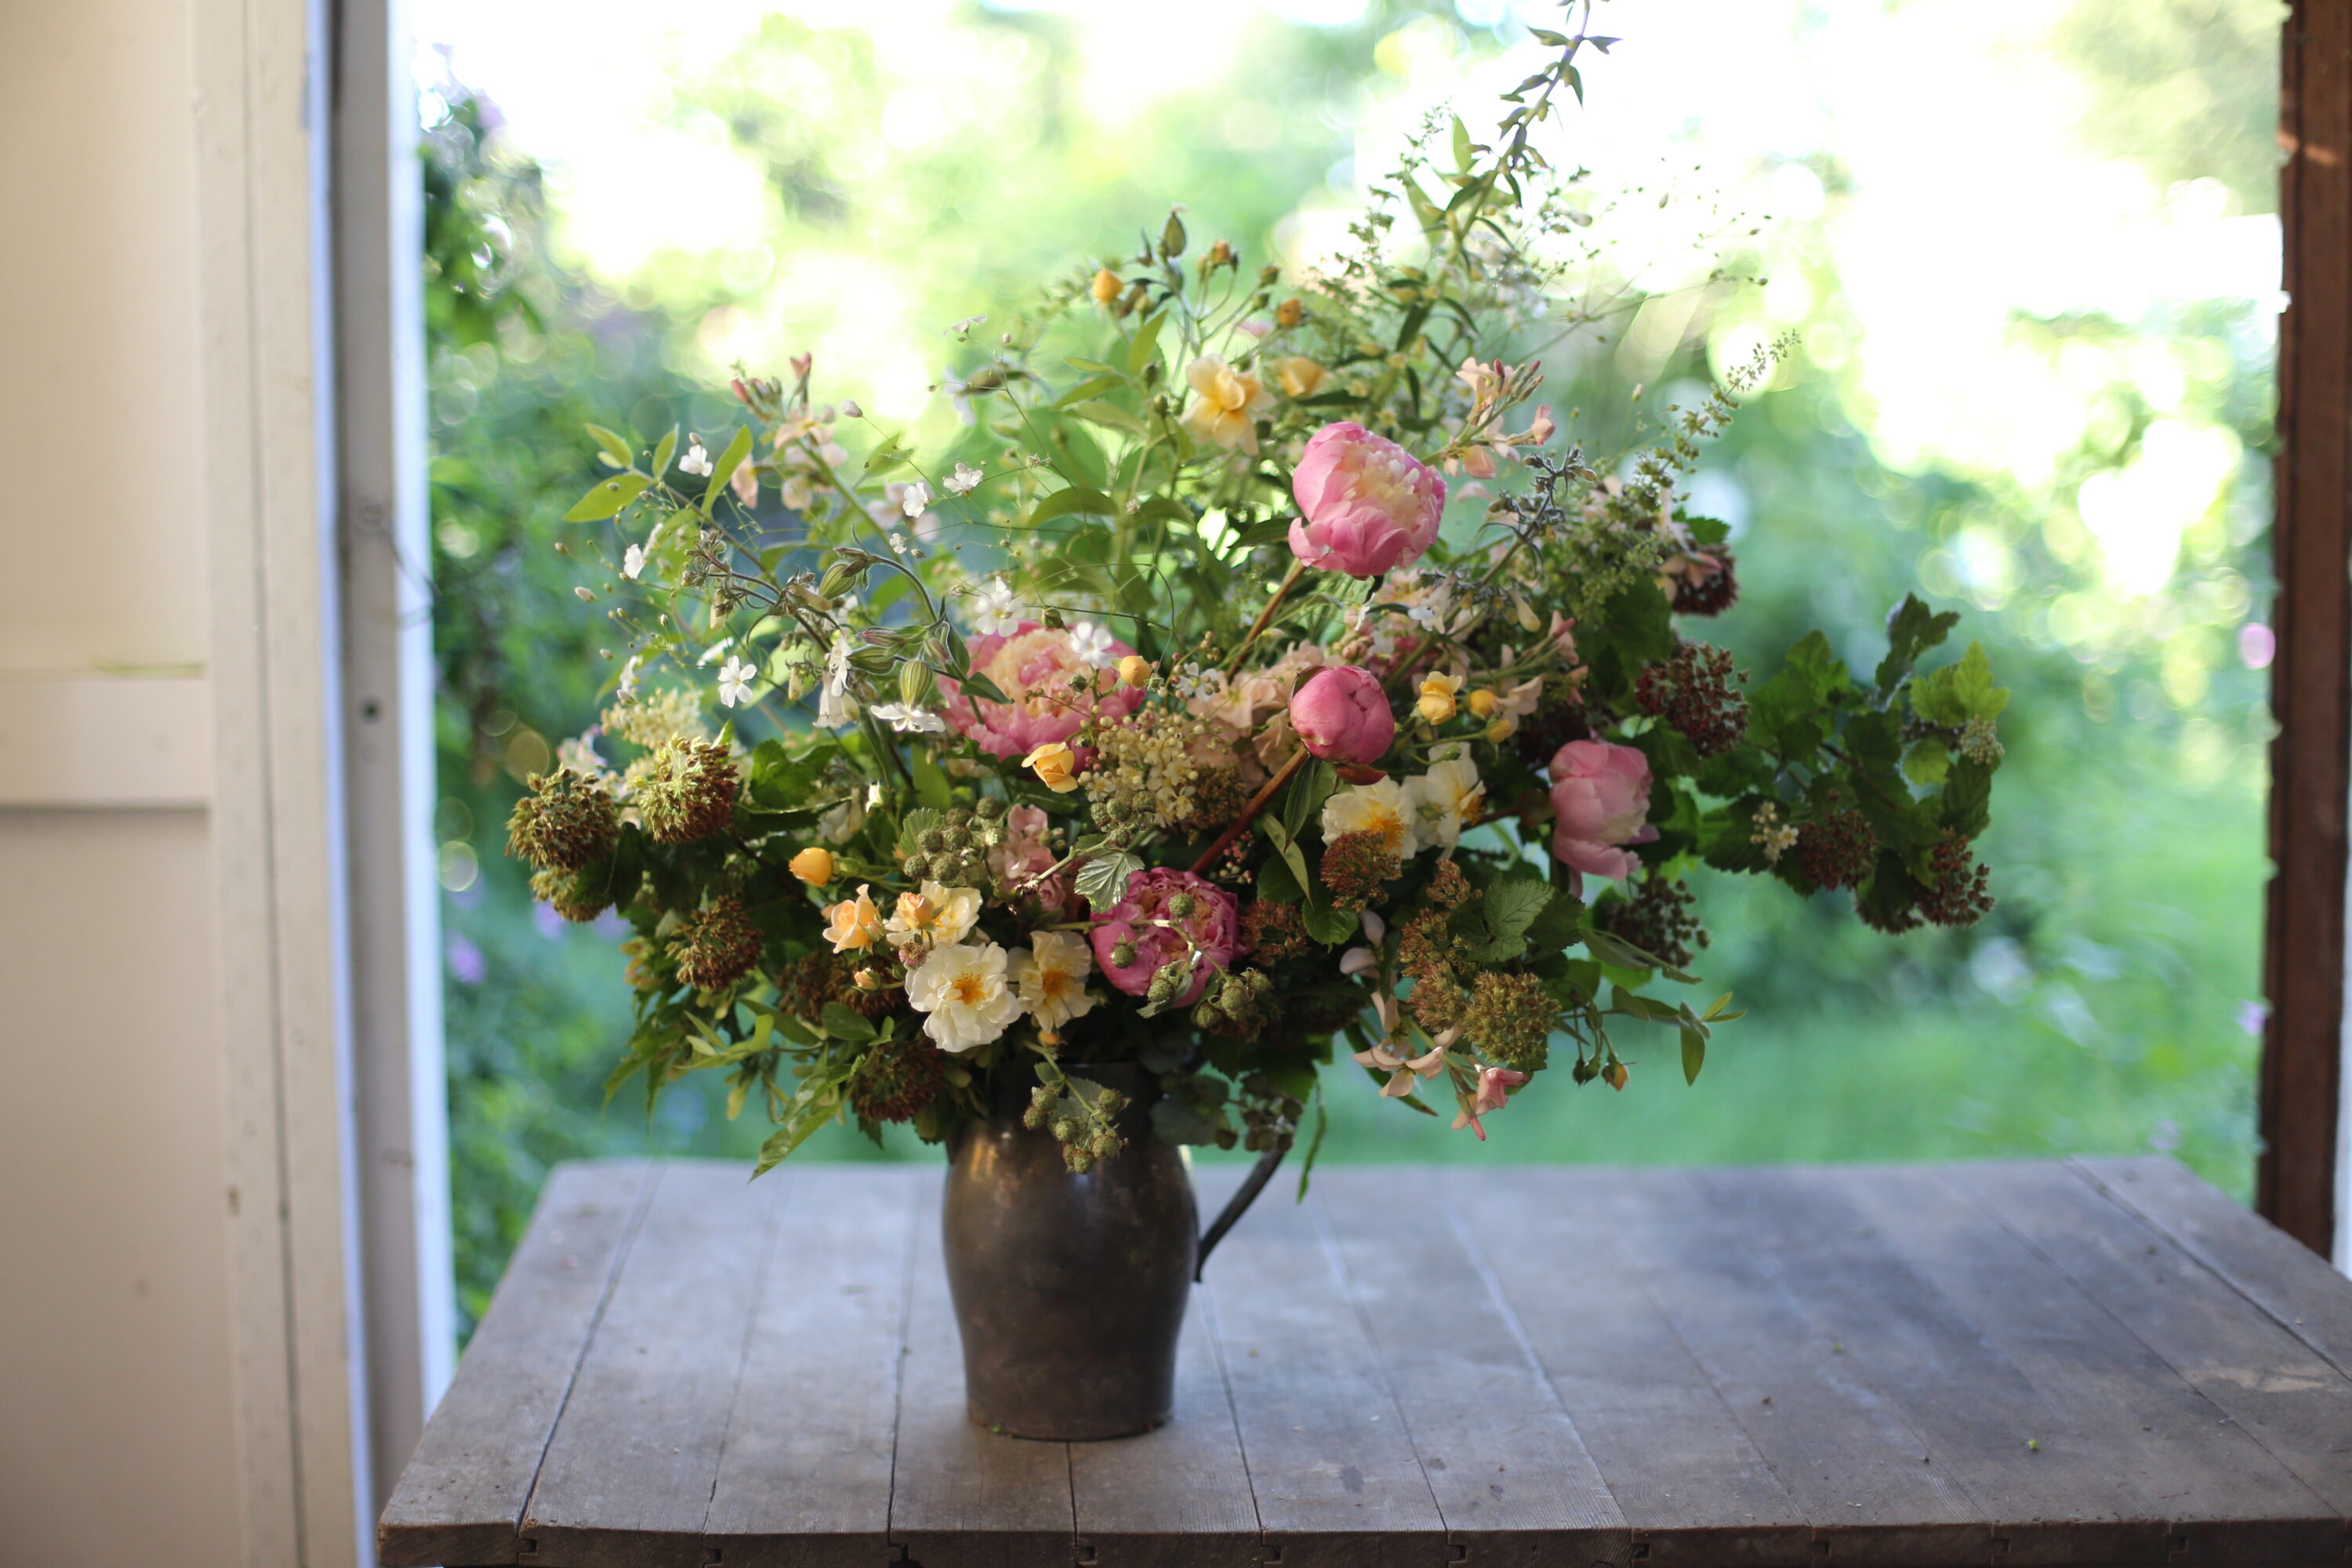 A bouquet of seasonal flowers